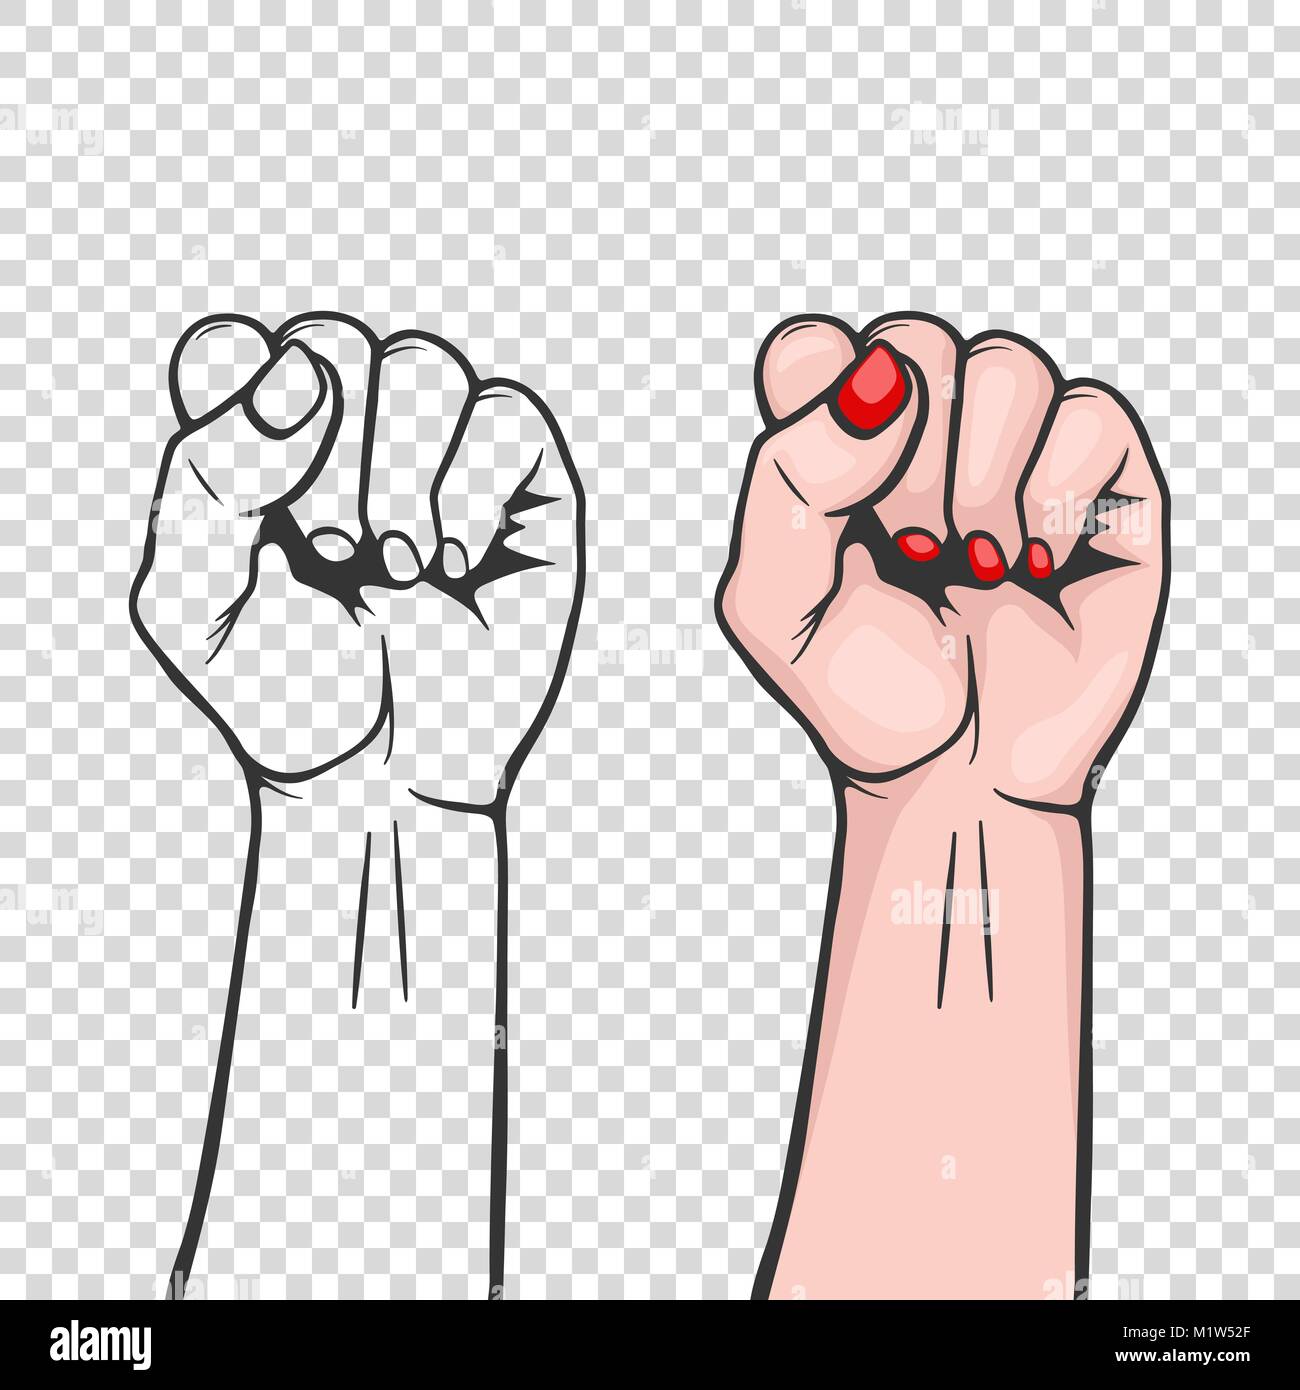 S femmes soulevées fist - symbole isolé ou l'unité, la solidarité avec les opprimés et les droits des femmes. Féminisme, protestation, révolution, rebelles ou de grève signe. Modèle pour les affiches d'art, des origines, etc. Illustration de Vecteur